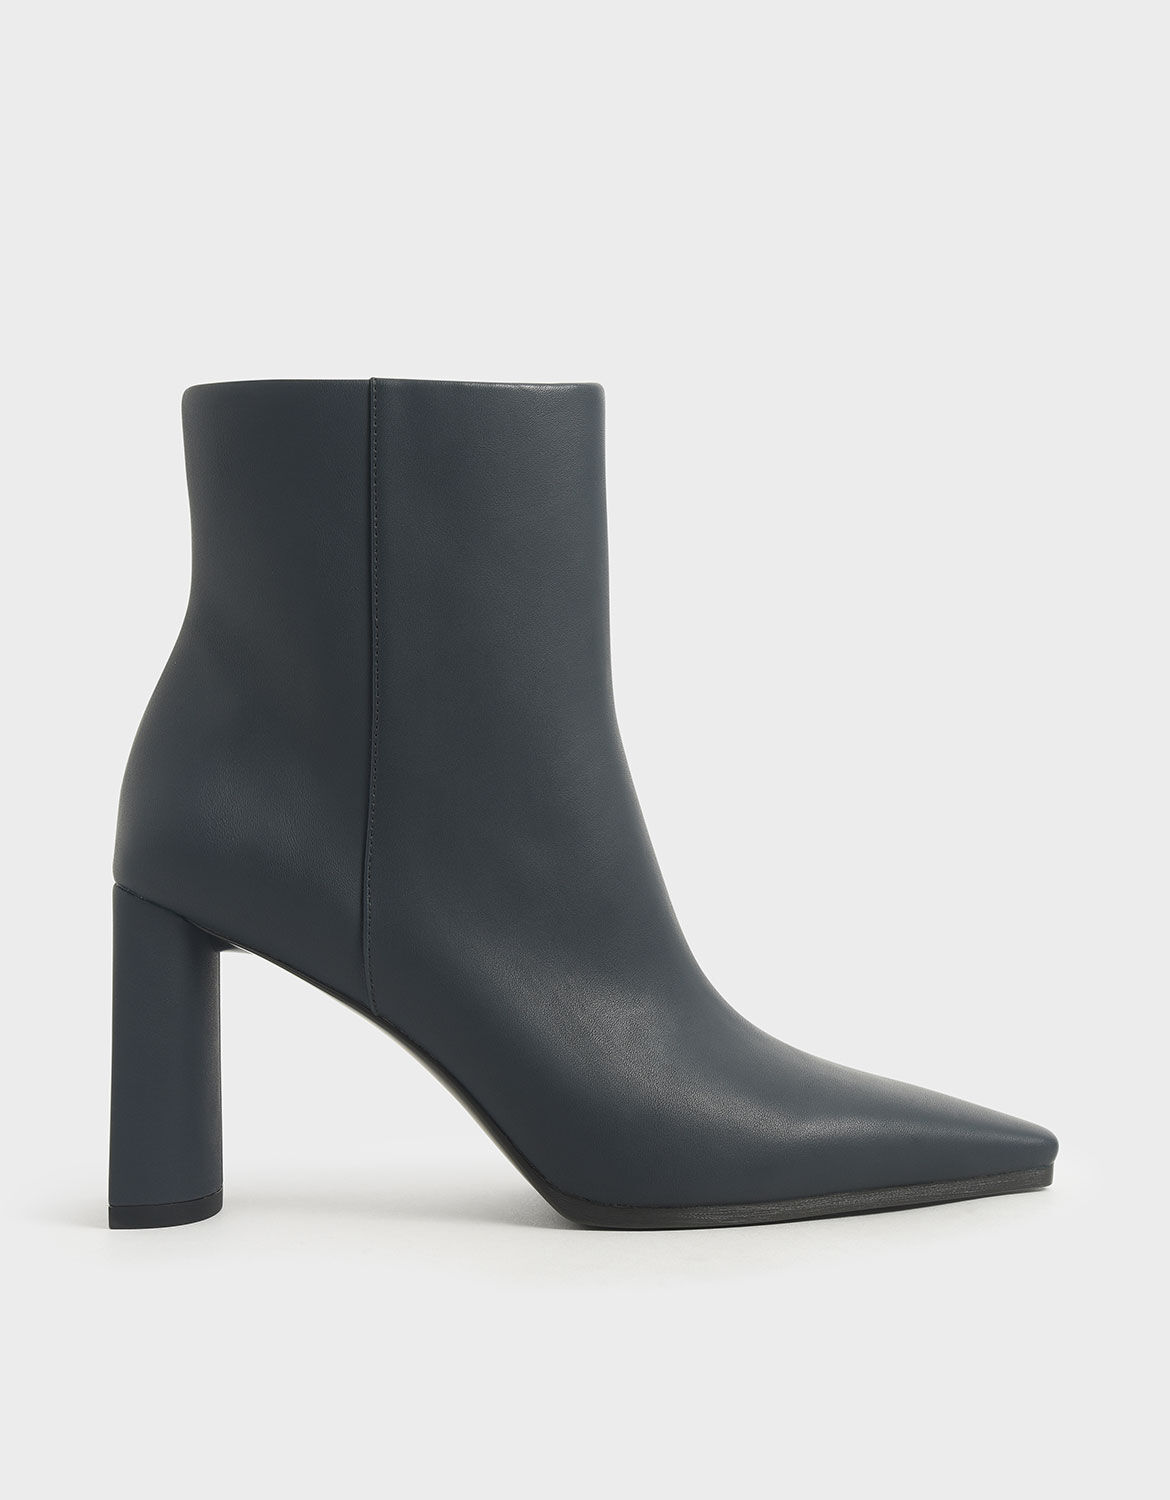 grey high heeled boots